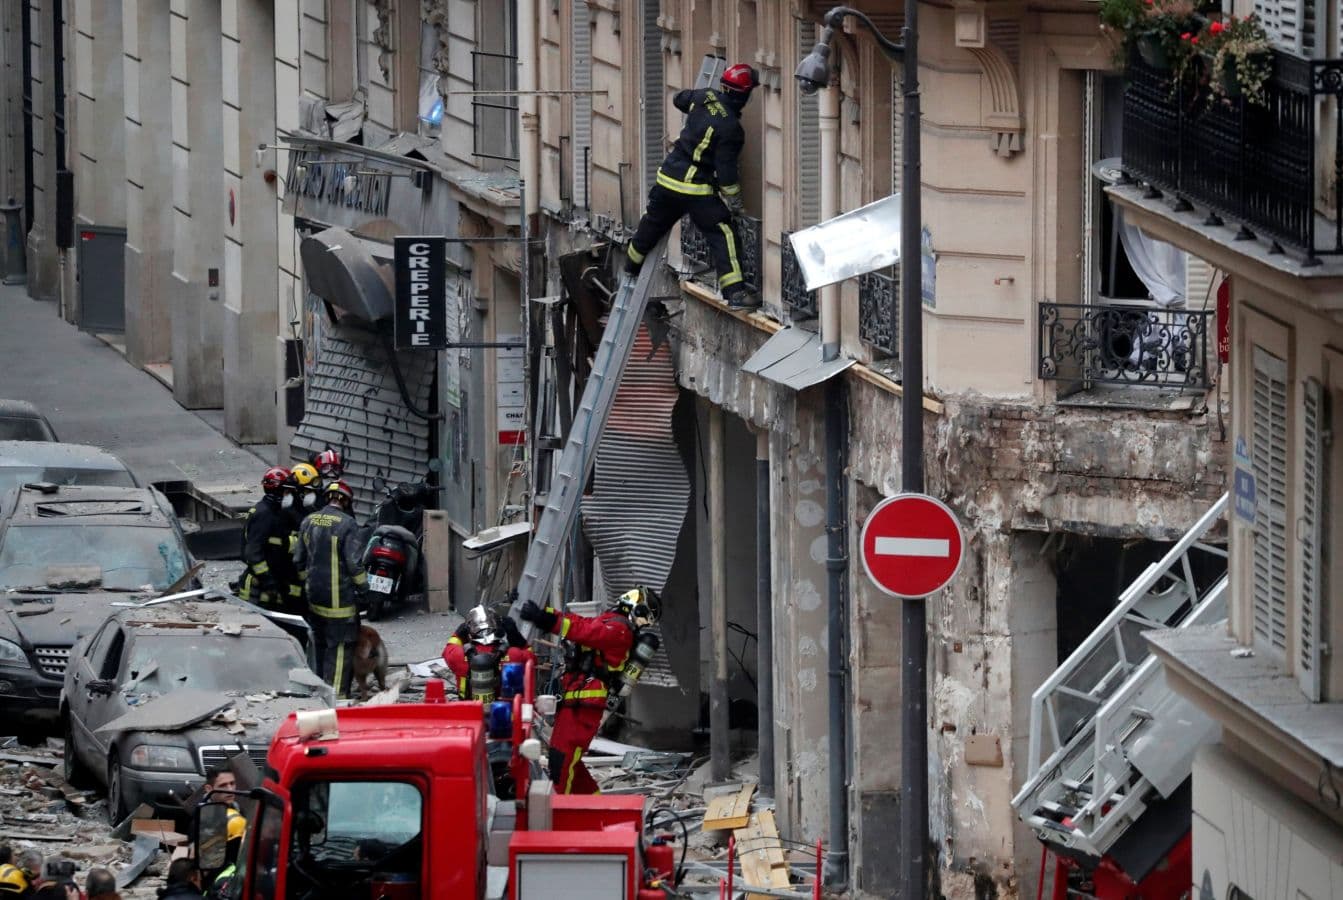 Gázrobbanás történt egy párizsi pékségben, többen megsérültek